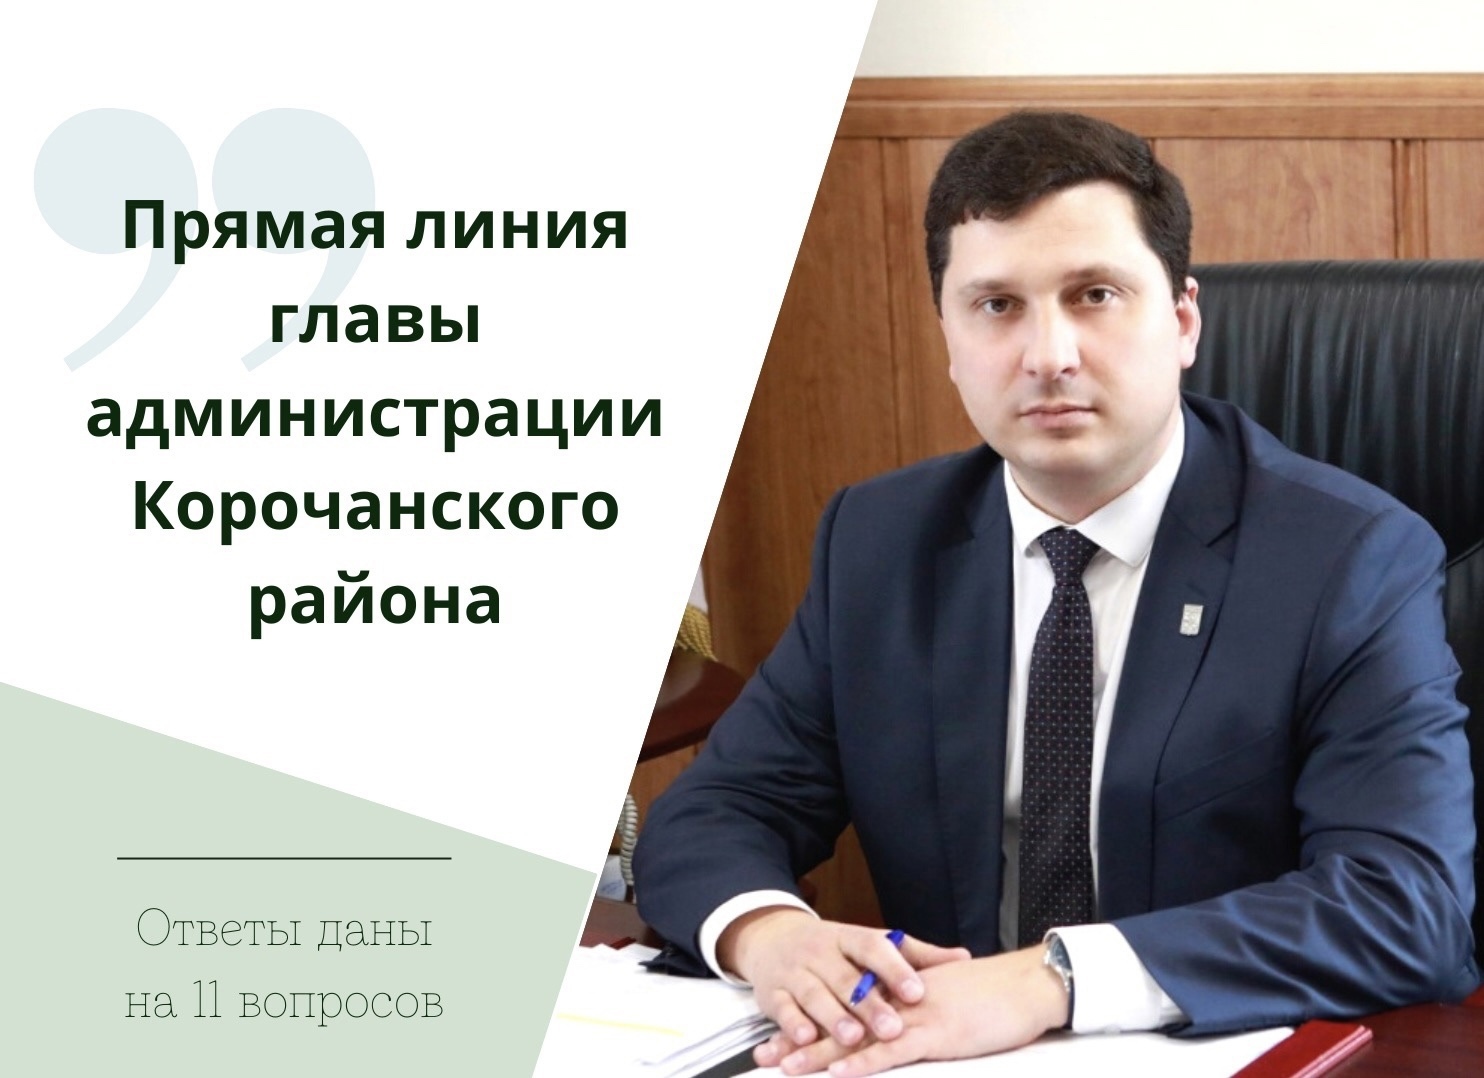 В ходе прямой линии глава администрации района Николай Нестеров дал ответ на 11 обращений